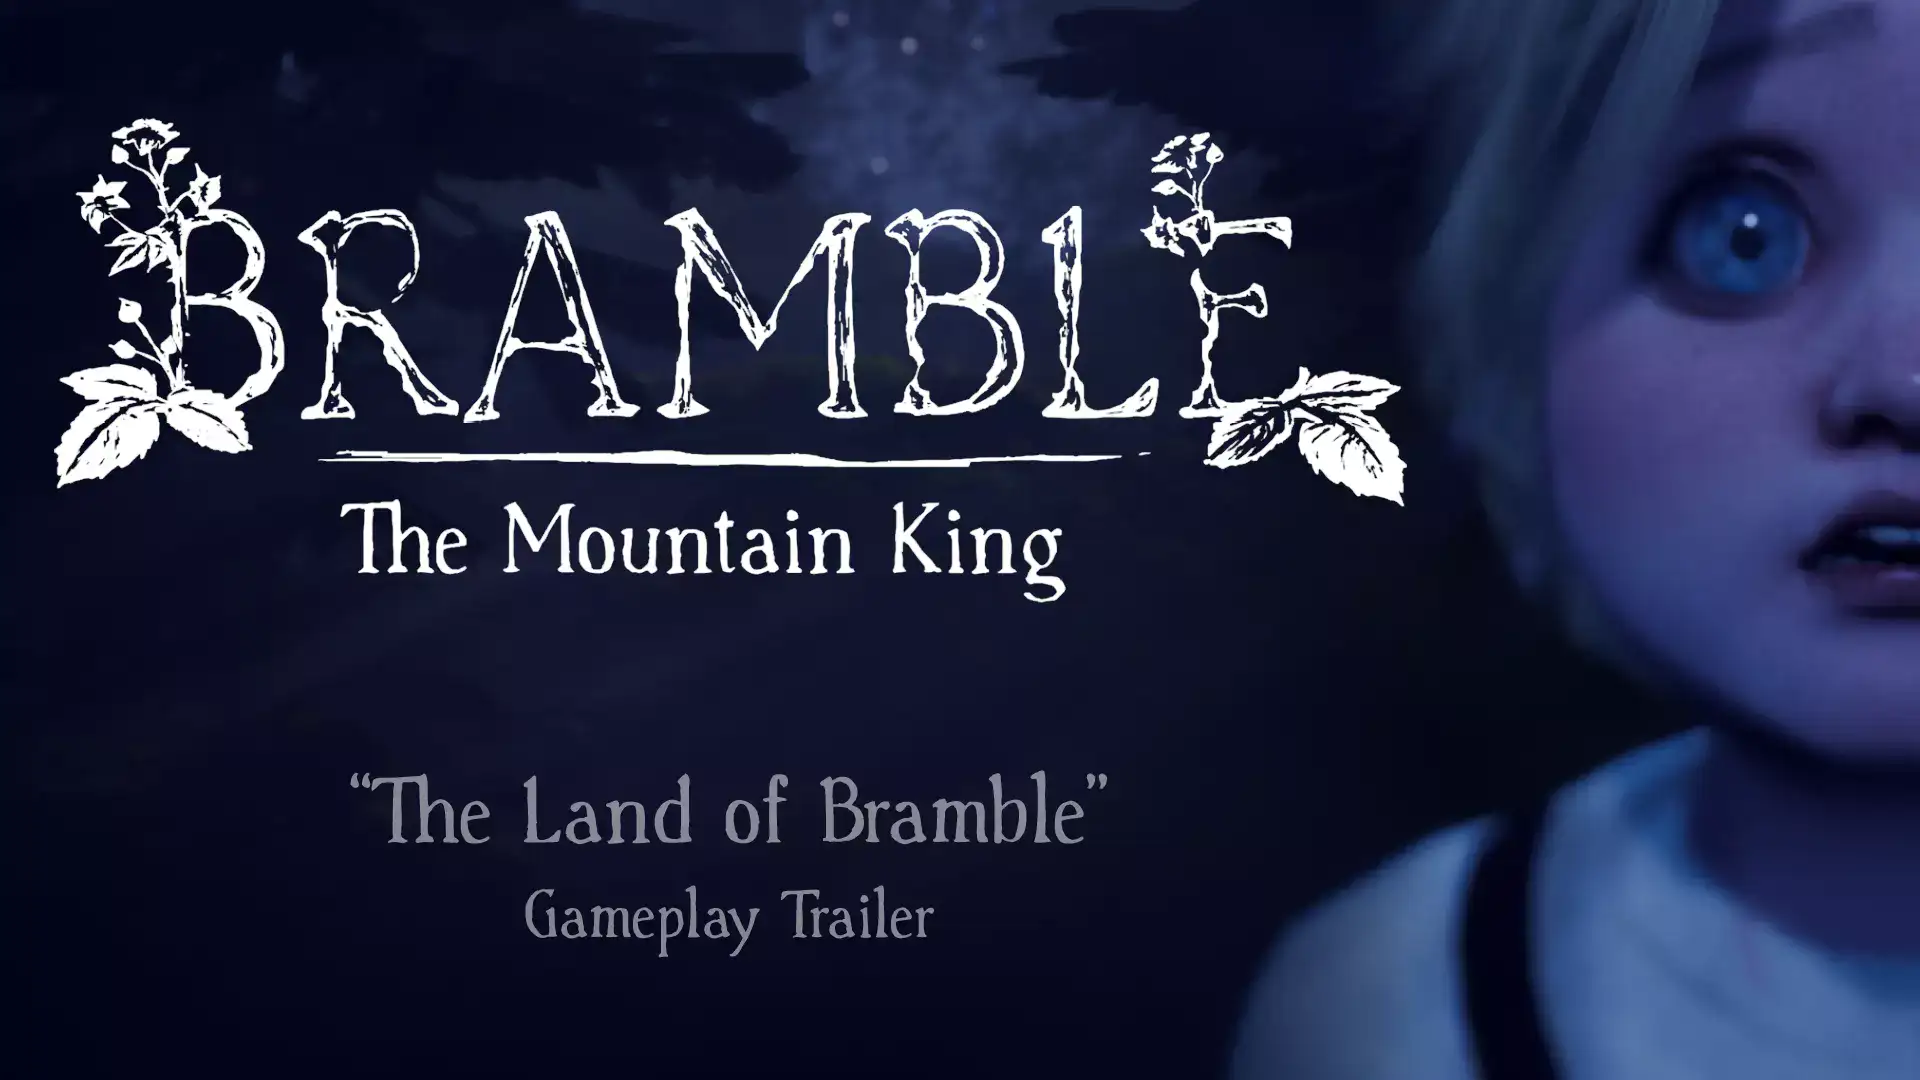 Studio - Bramble Dimfrost